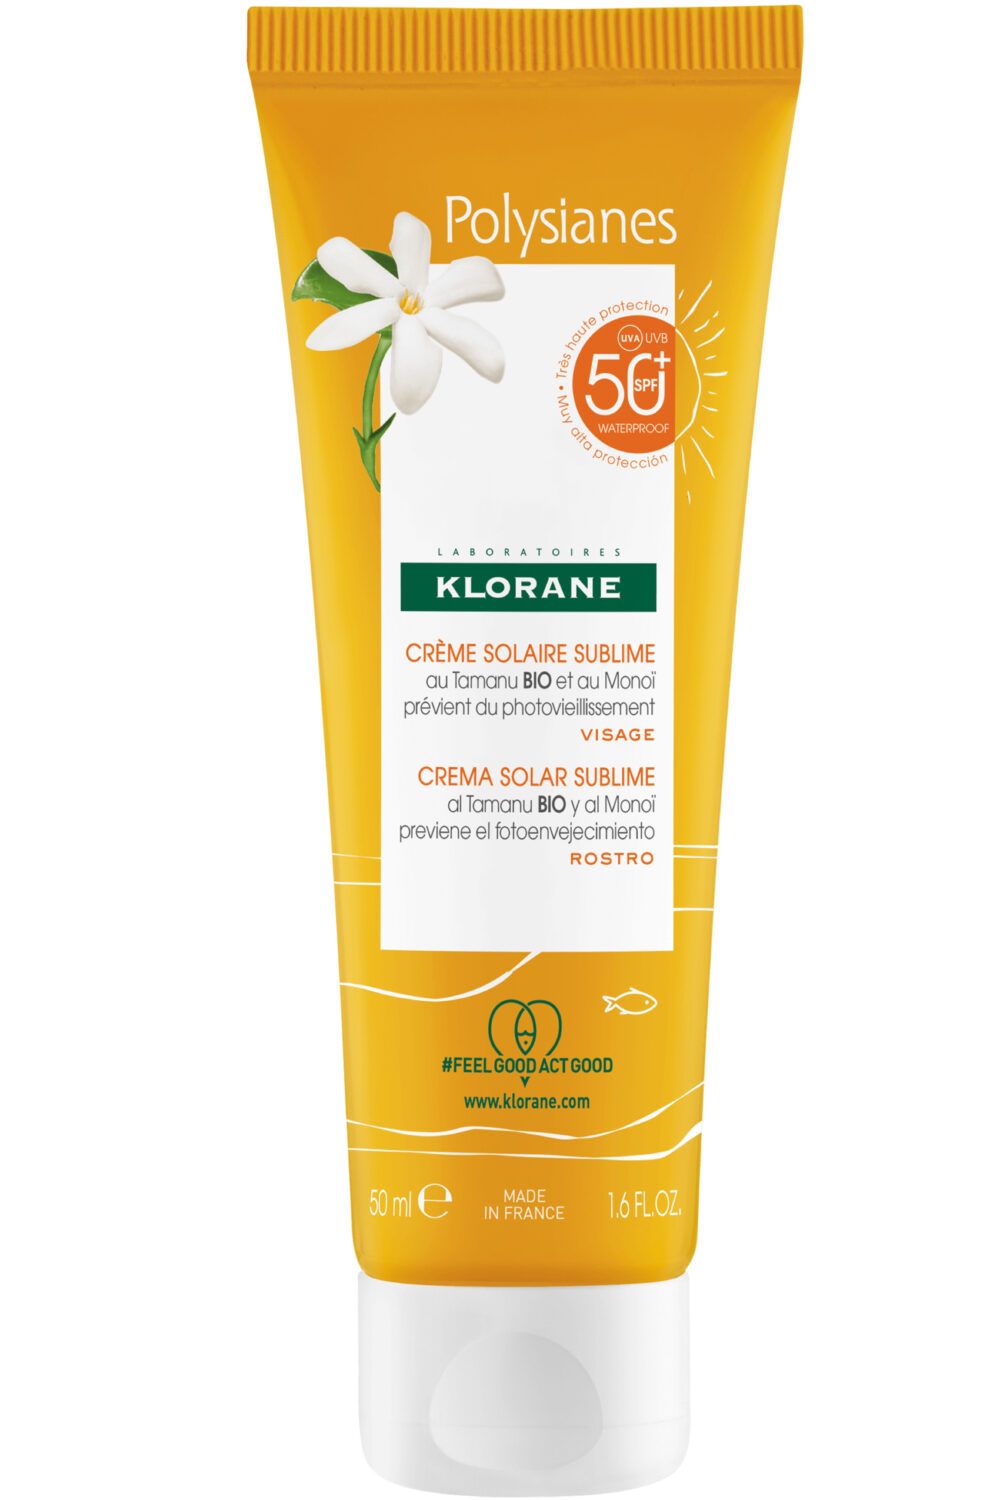 Klorane - Crème solaire sublime SPF 50 au Tamanu bio et Monoï